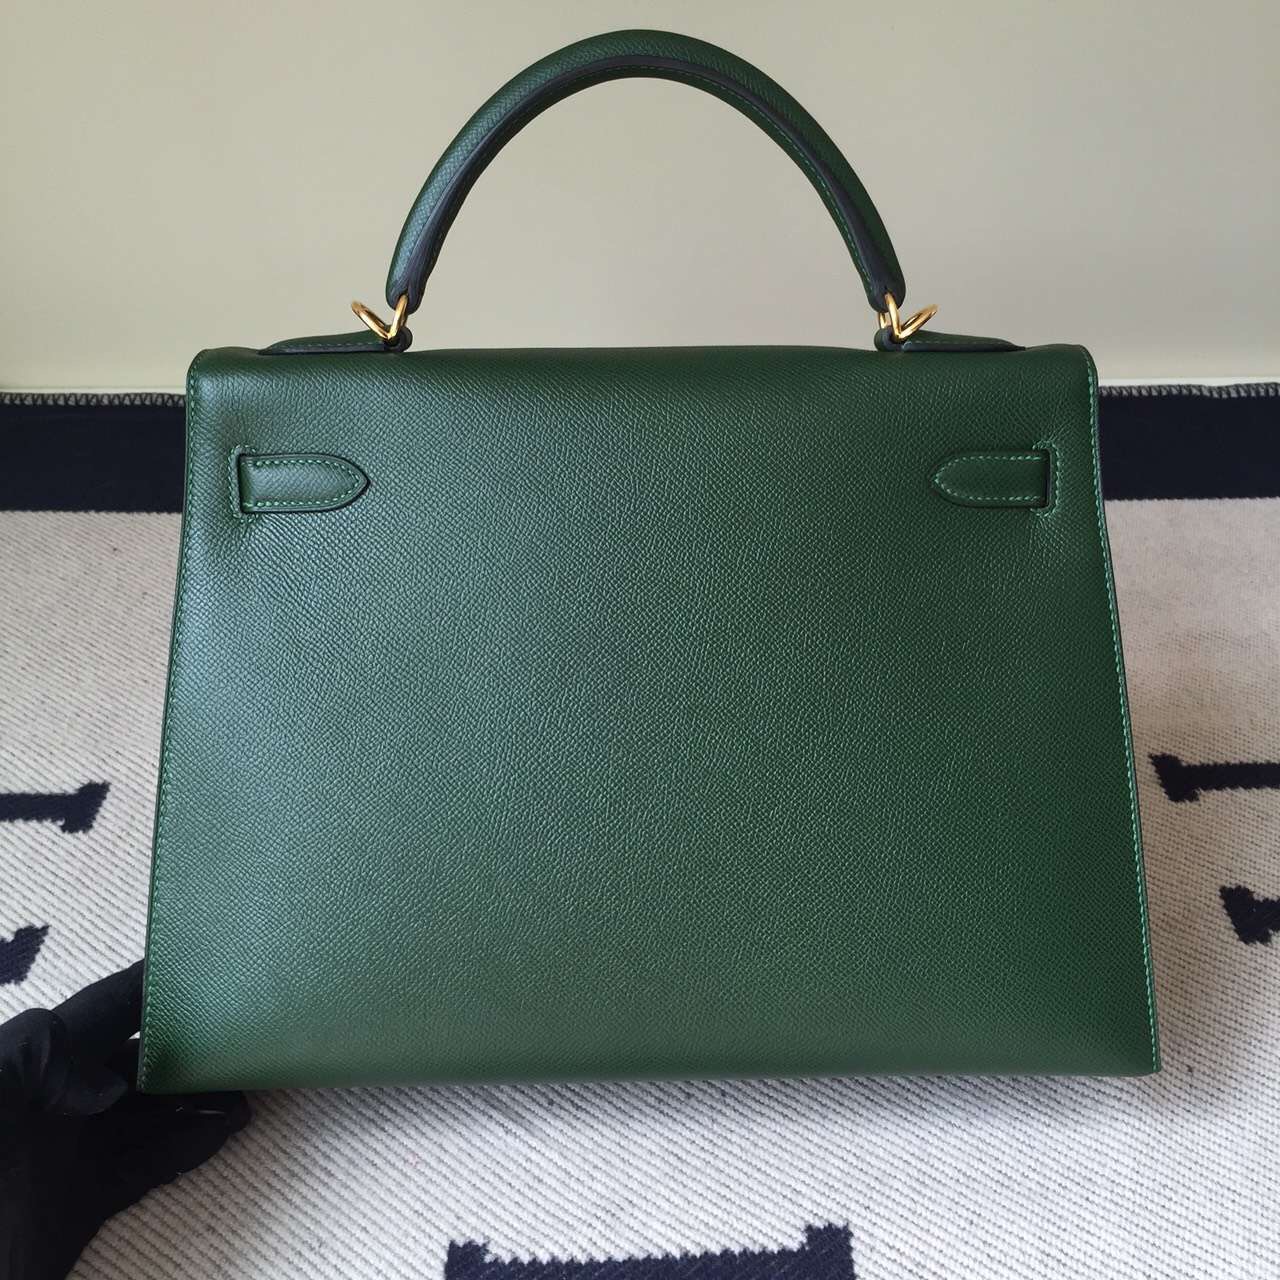 New Hermes Epsom Calfskin Leather Sellier Kelly Bag32CM in Vert Anglais